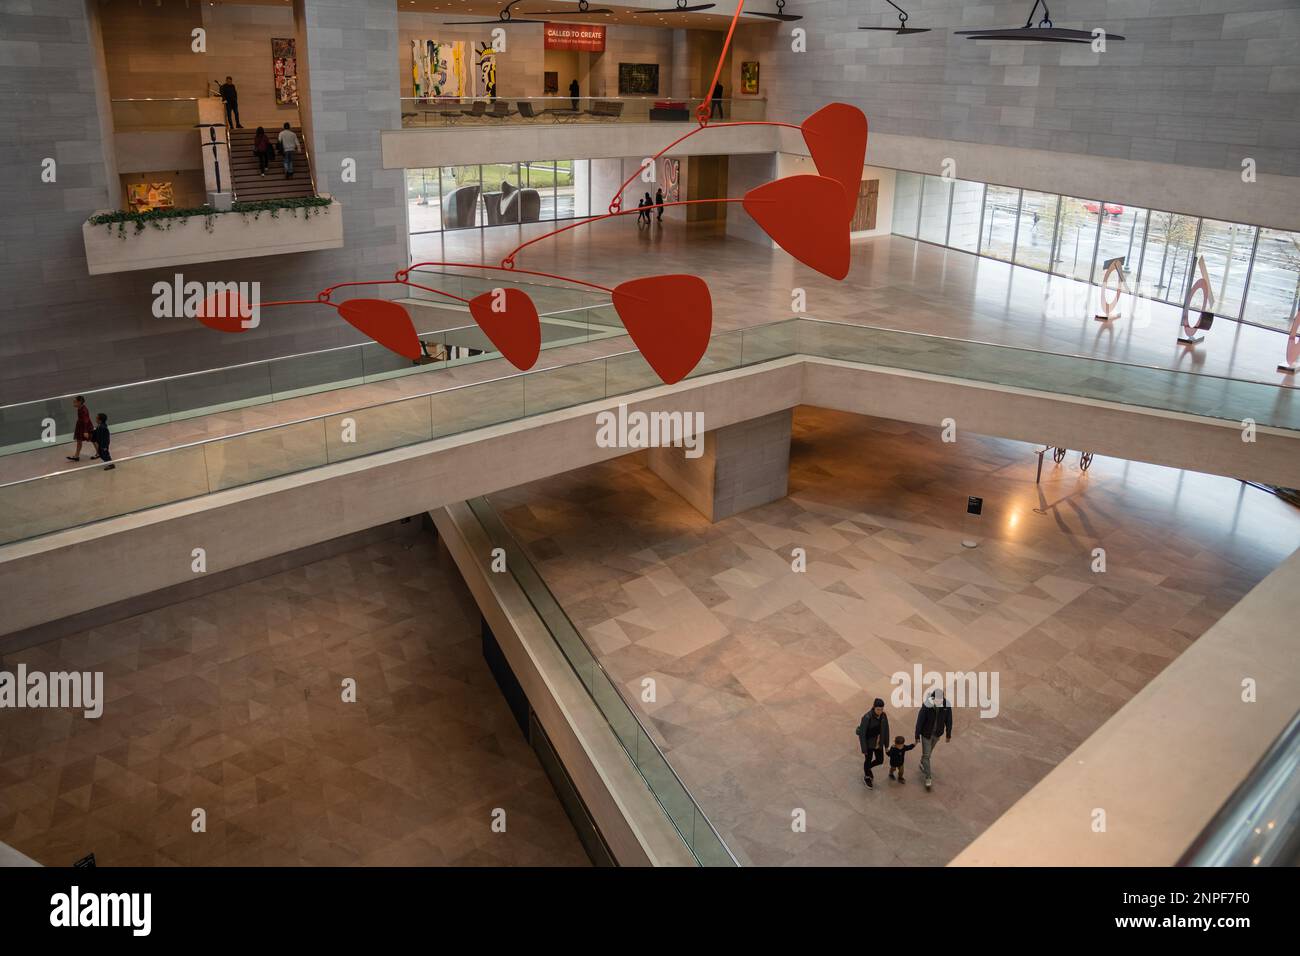 Washington, DC, USA-27. November 2022: Innenlobby der National Gallery of Art an der National Mall mit Ausstellungen zum Wandern und Beobachten von Menschen Stockfoto